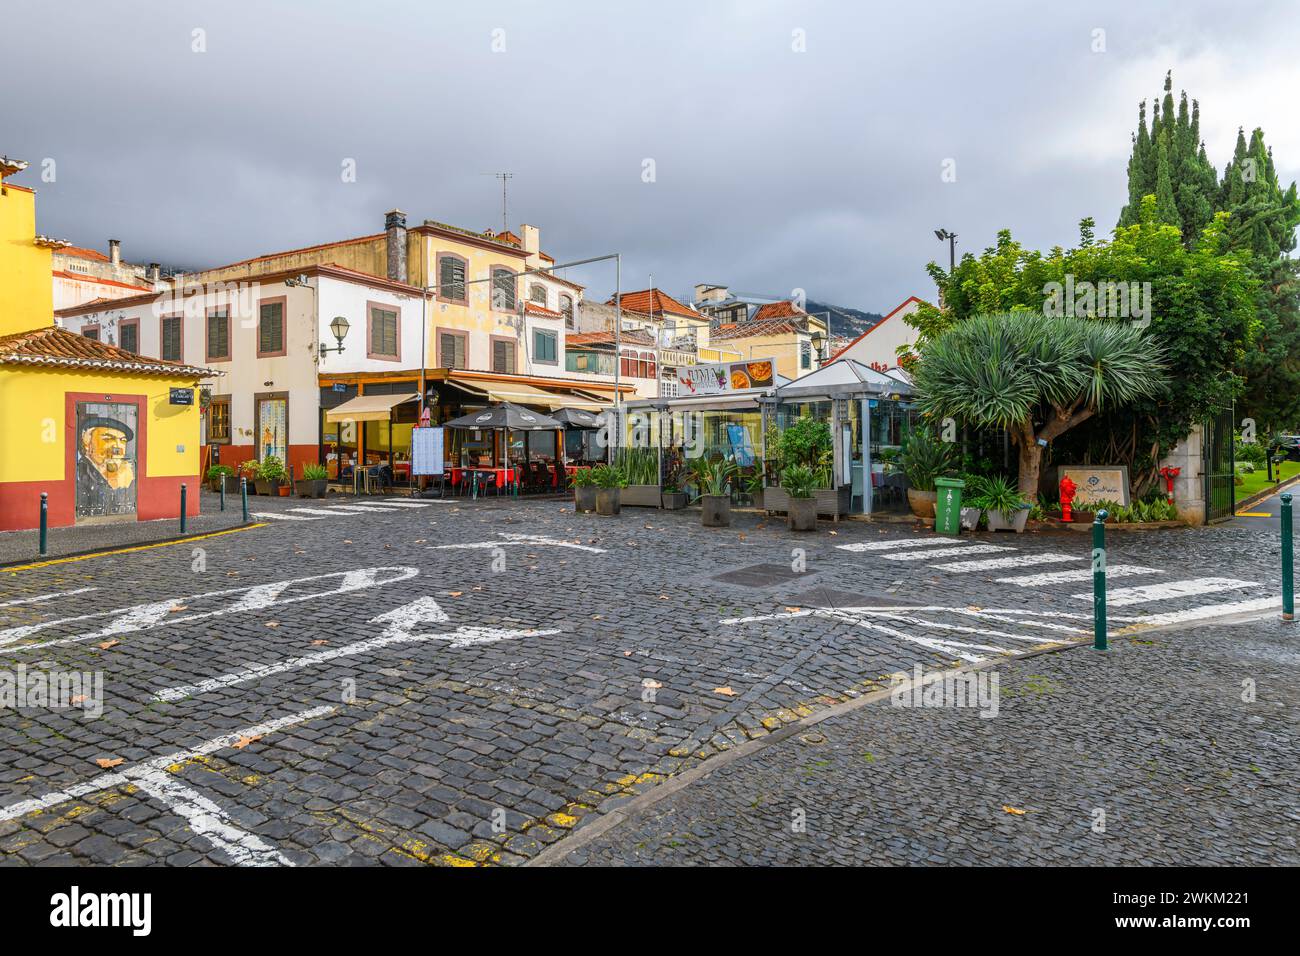 La célèbre Rua de Santa Maria rue étroite de cafés, portes colorées et magasins dans la vieille ville médiévale historique de Funchal, Madère Portugal. Banque D'Images